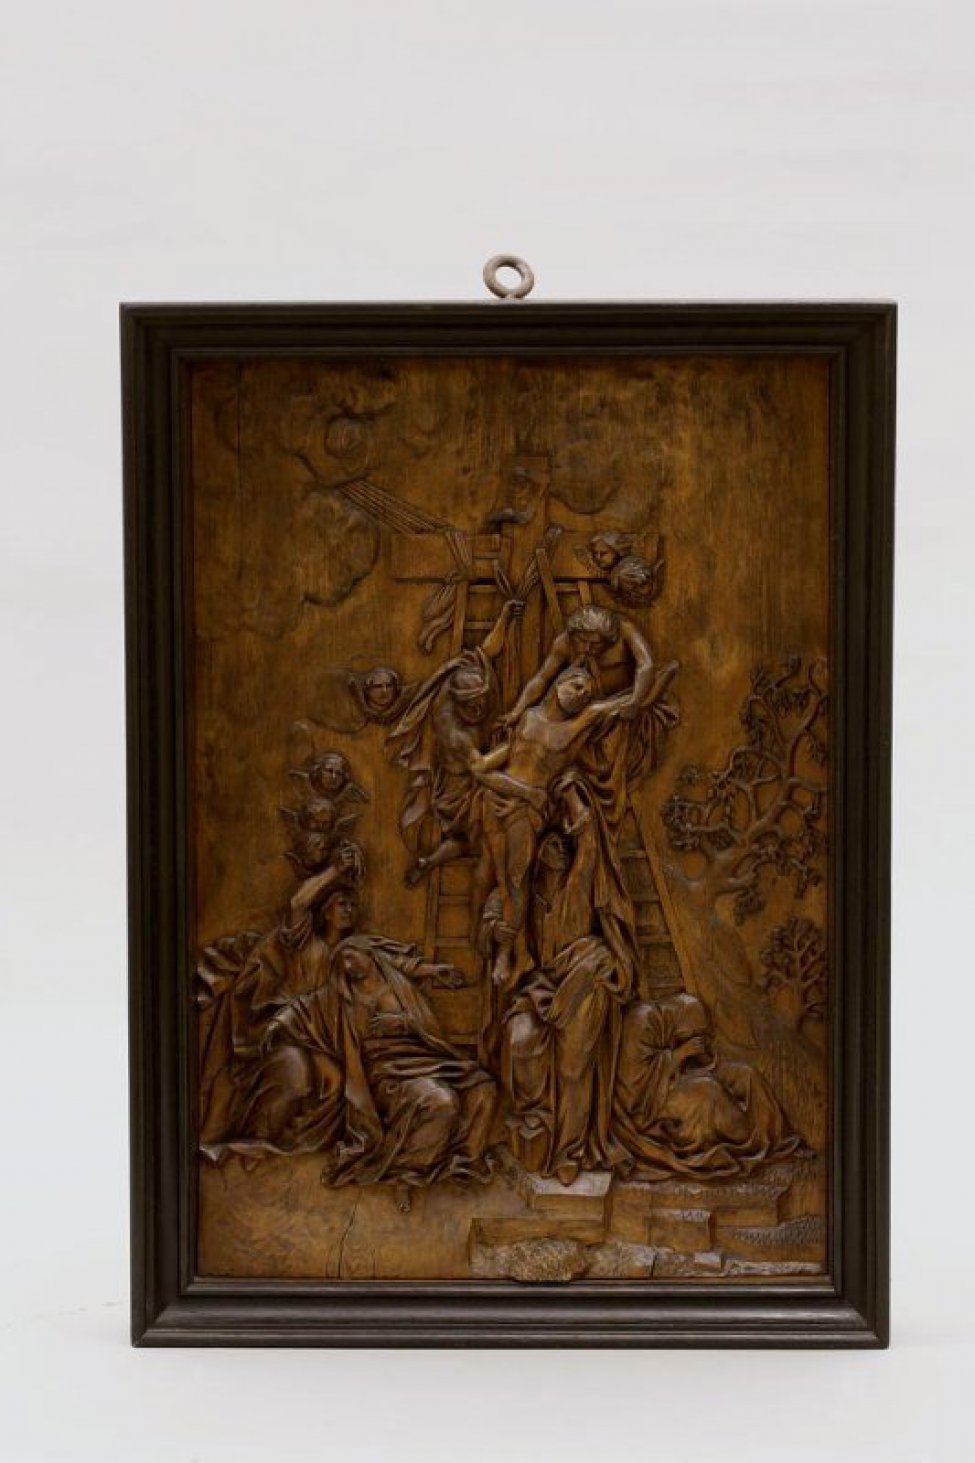 Изображены двое мужчин, которые снимают с креста Христа, вокруг изображено много людей, которые наблюдают за снятием. Справа находятся два дерева.